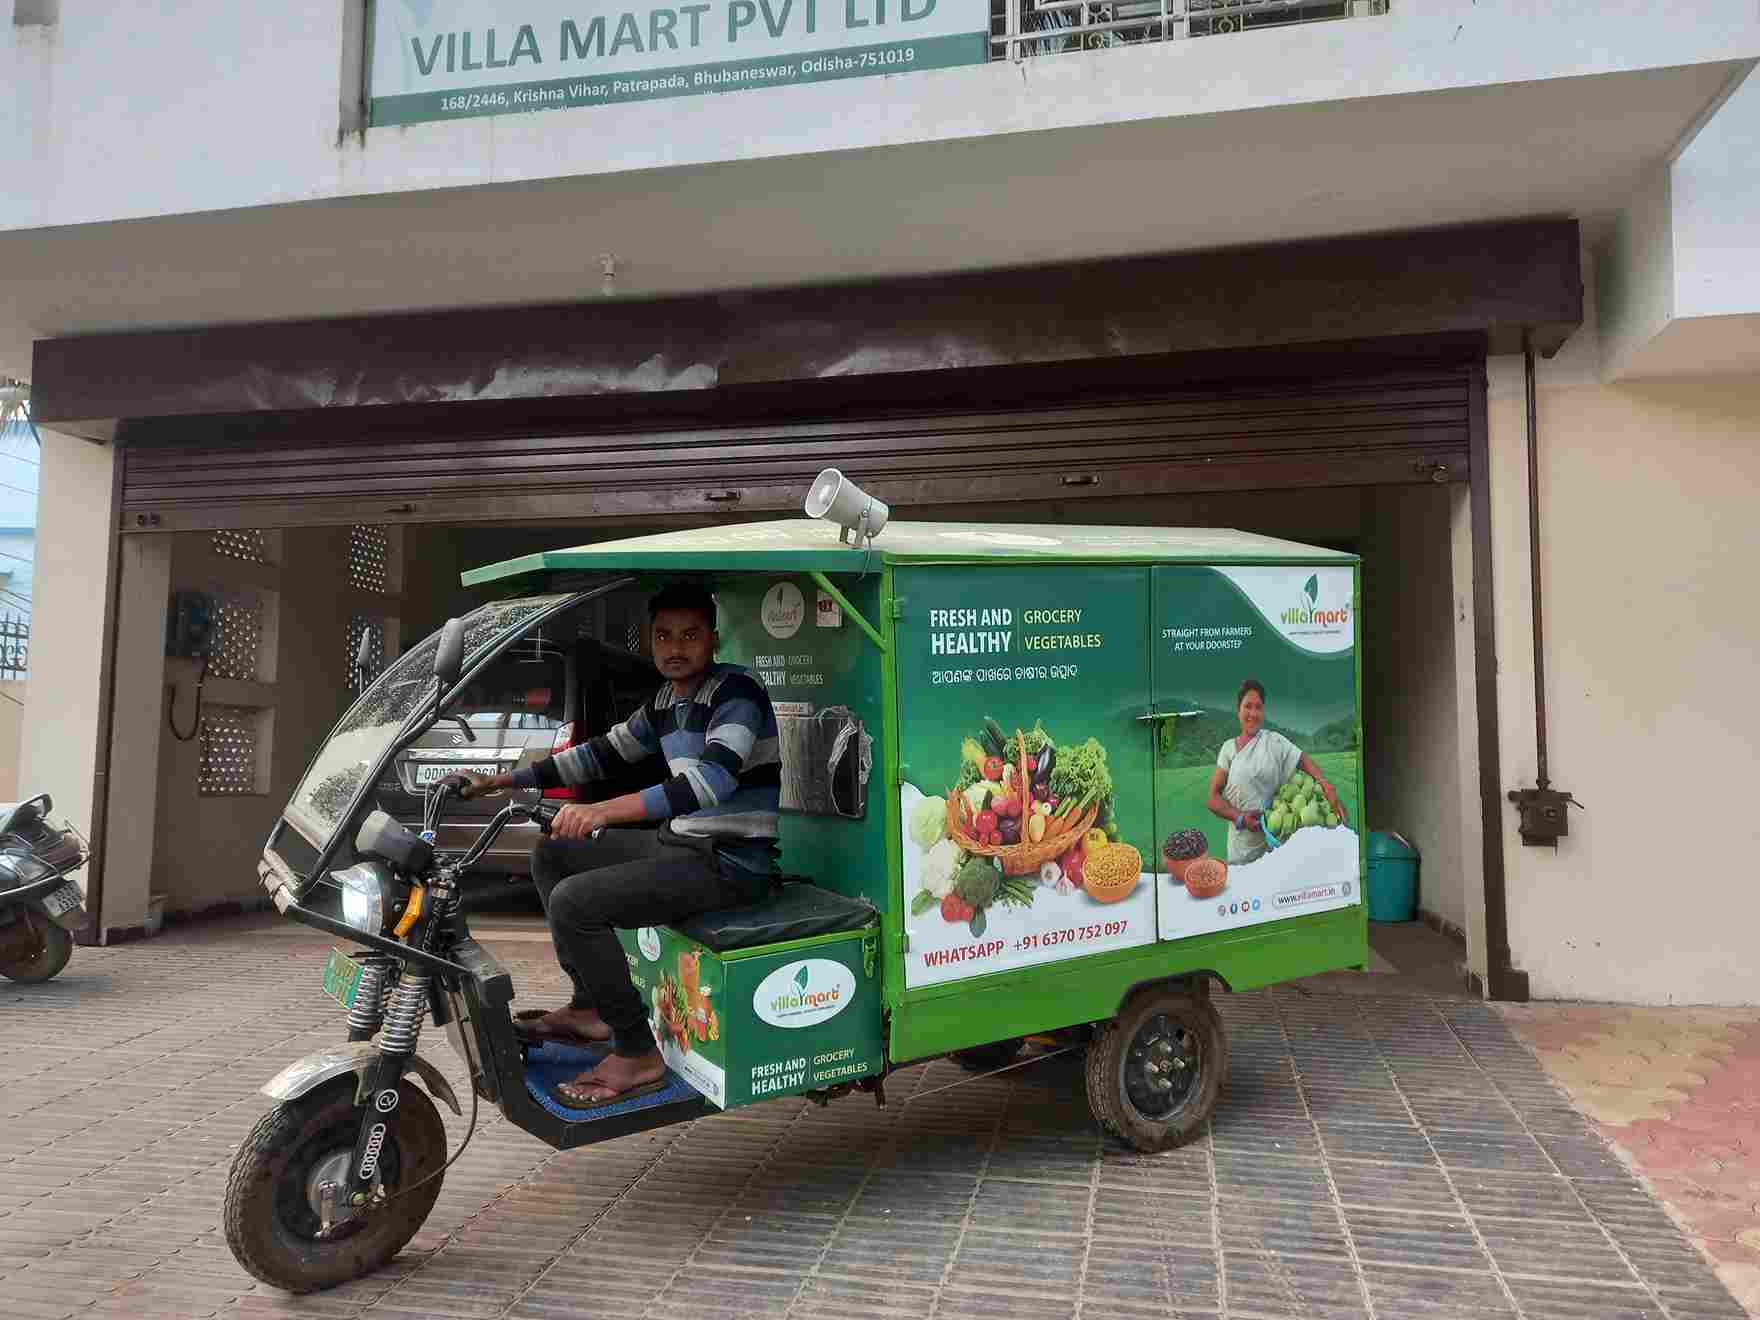 Villa Mart memiliki tujuh mobil van yang diubah menjadi supermarket mini